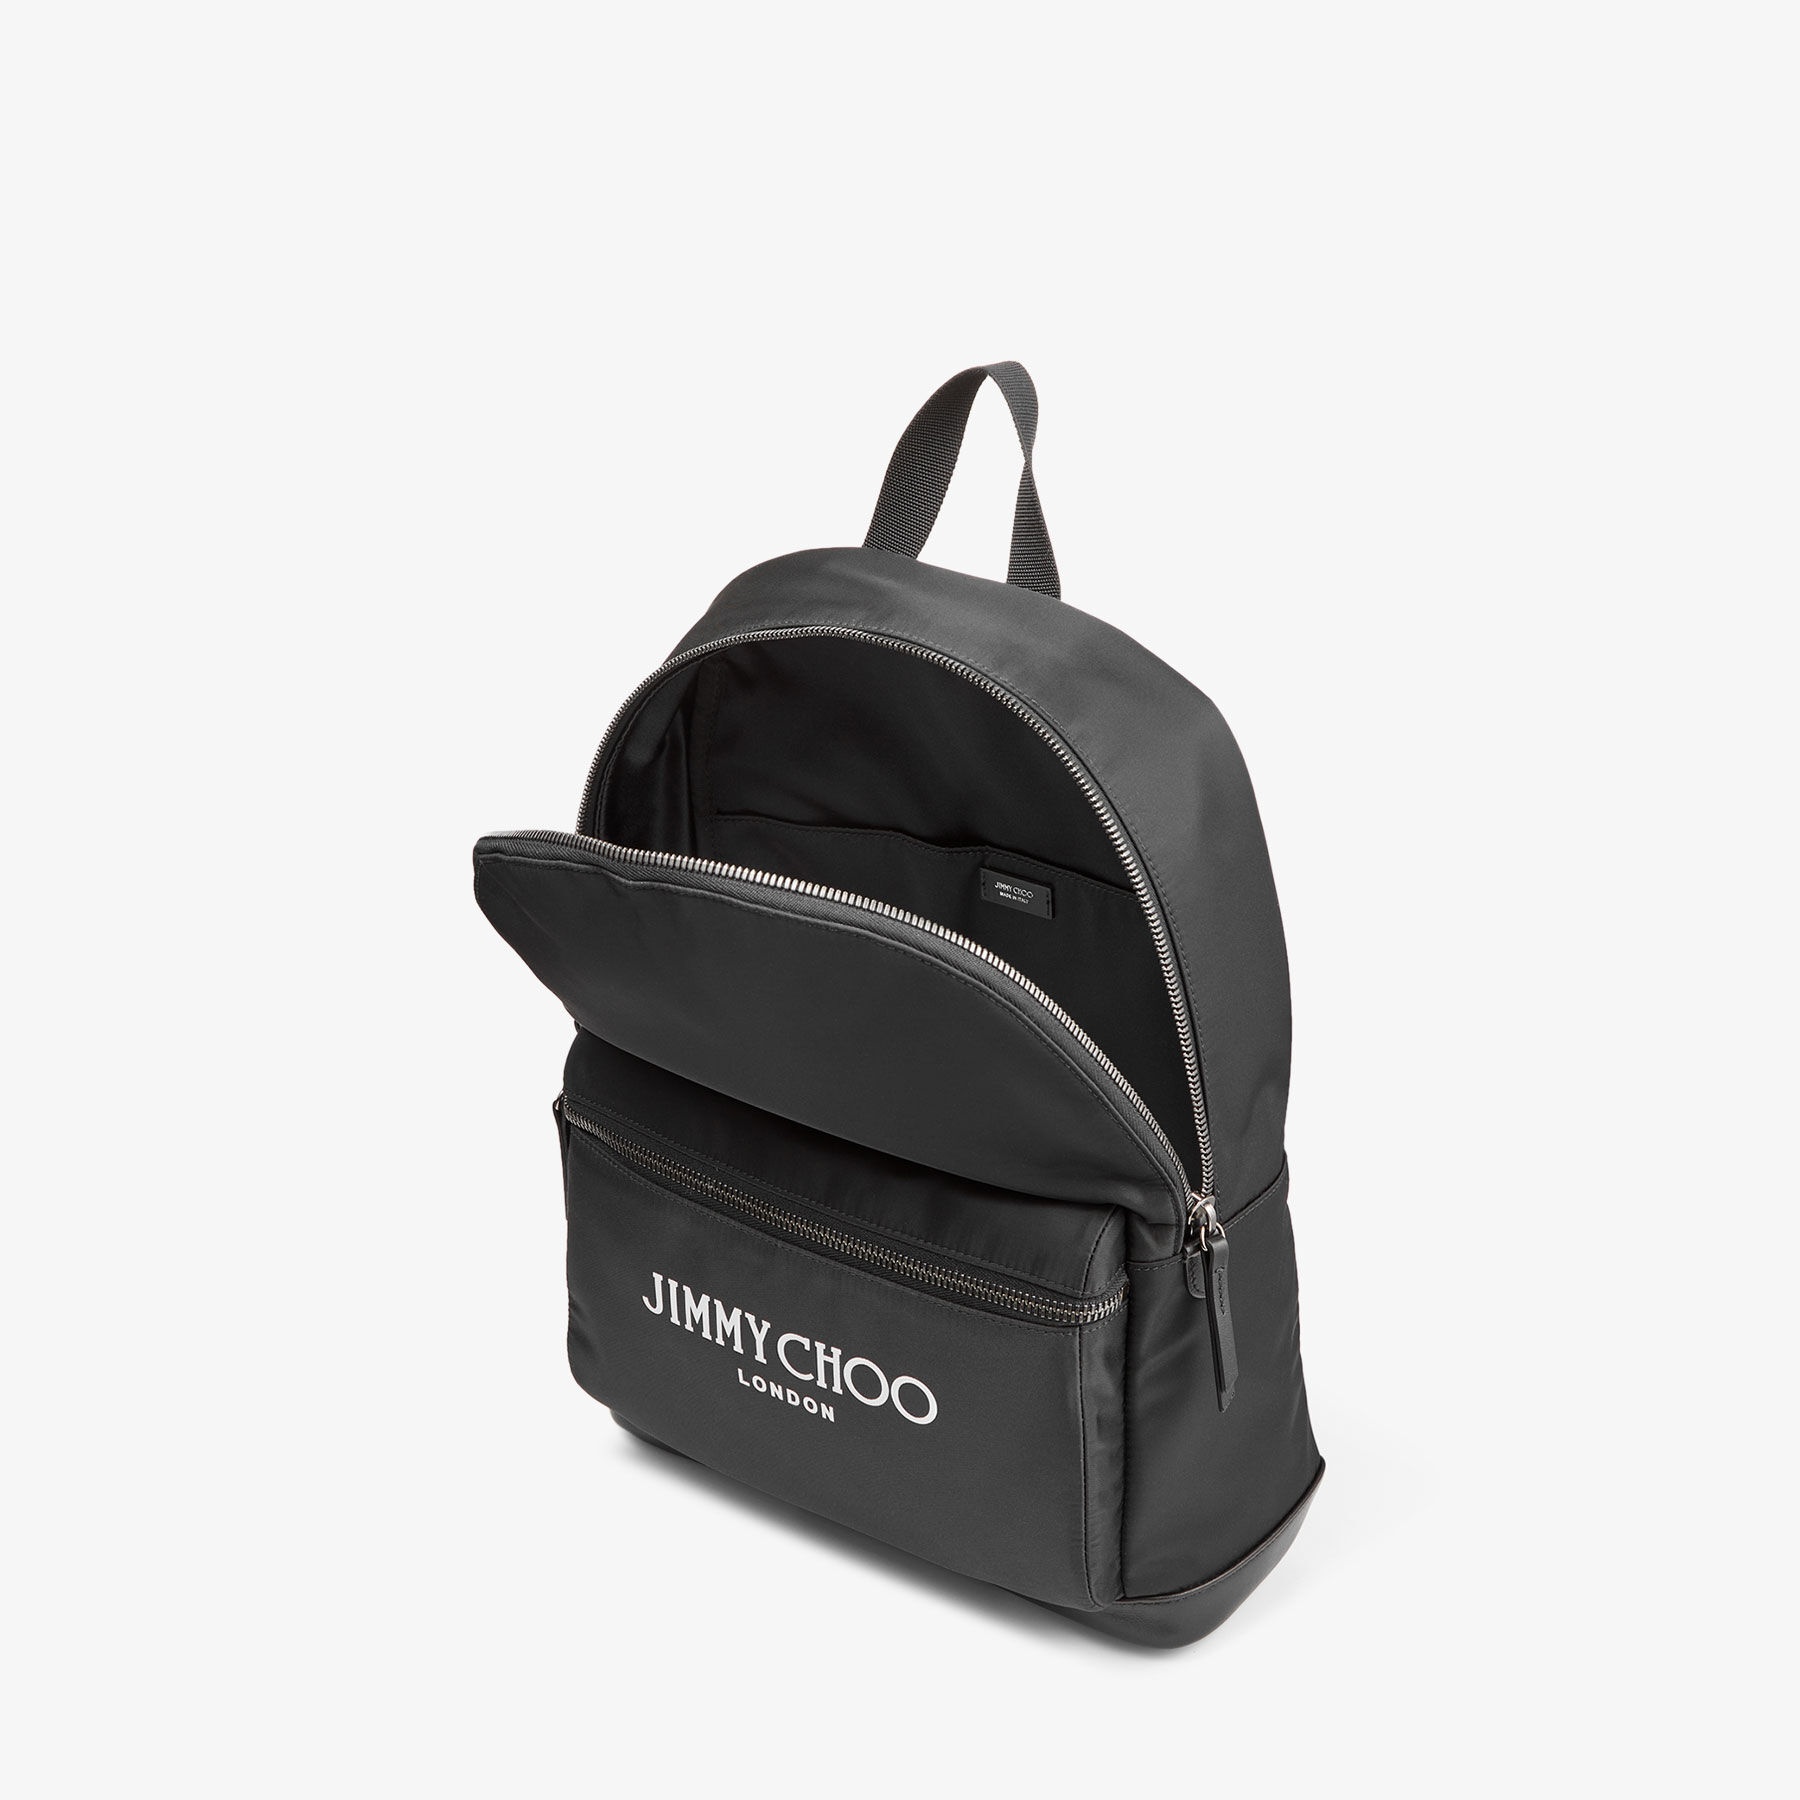 Wilmer
Black Nylon Backpack with Jimmy Choo Logo - 4